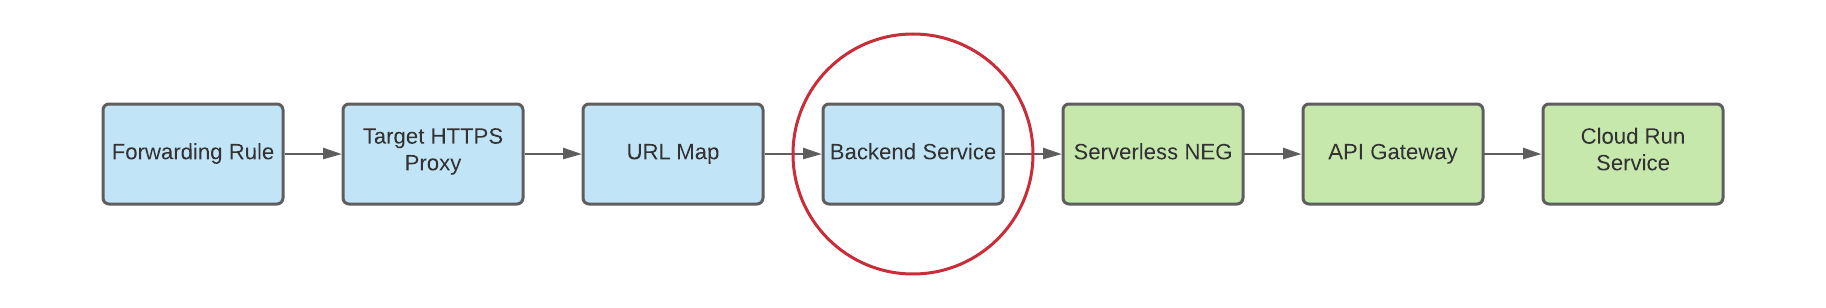 diagrama de neg sem servidor como back-end de um serviço de back-end